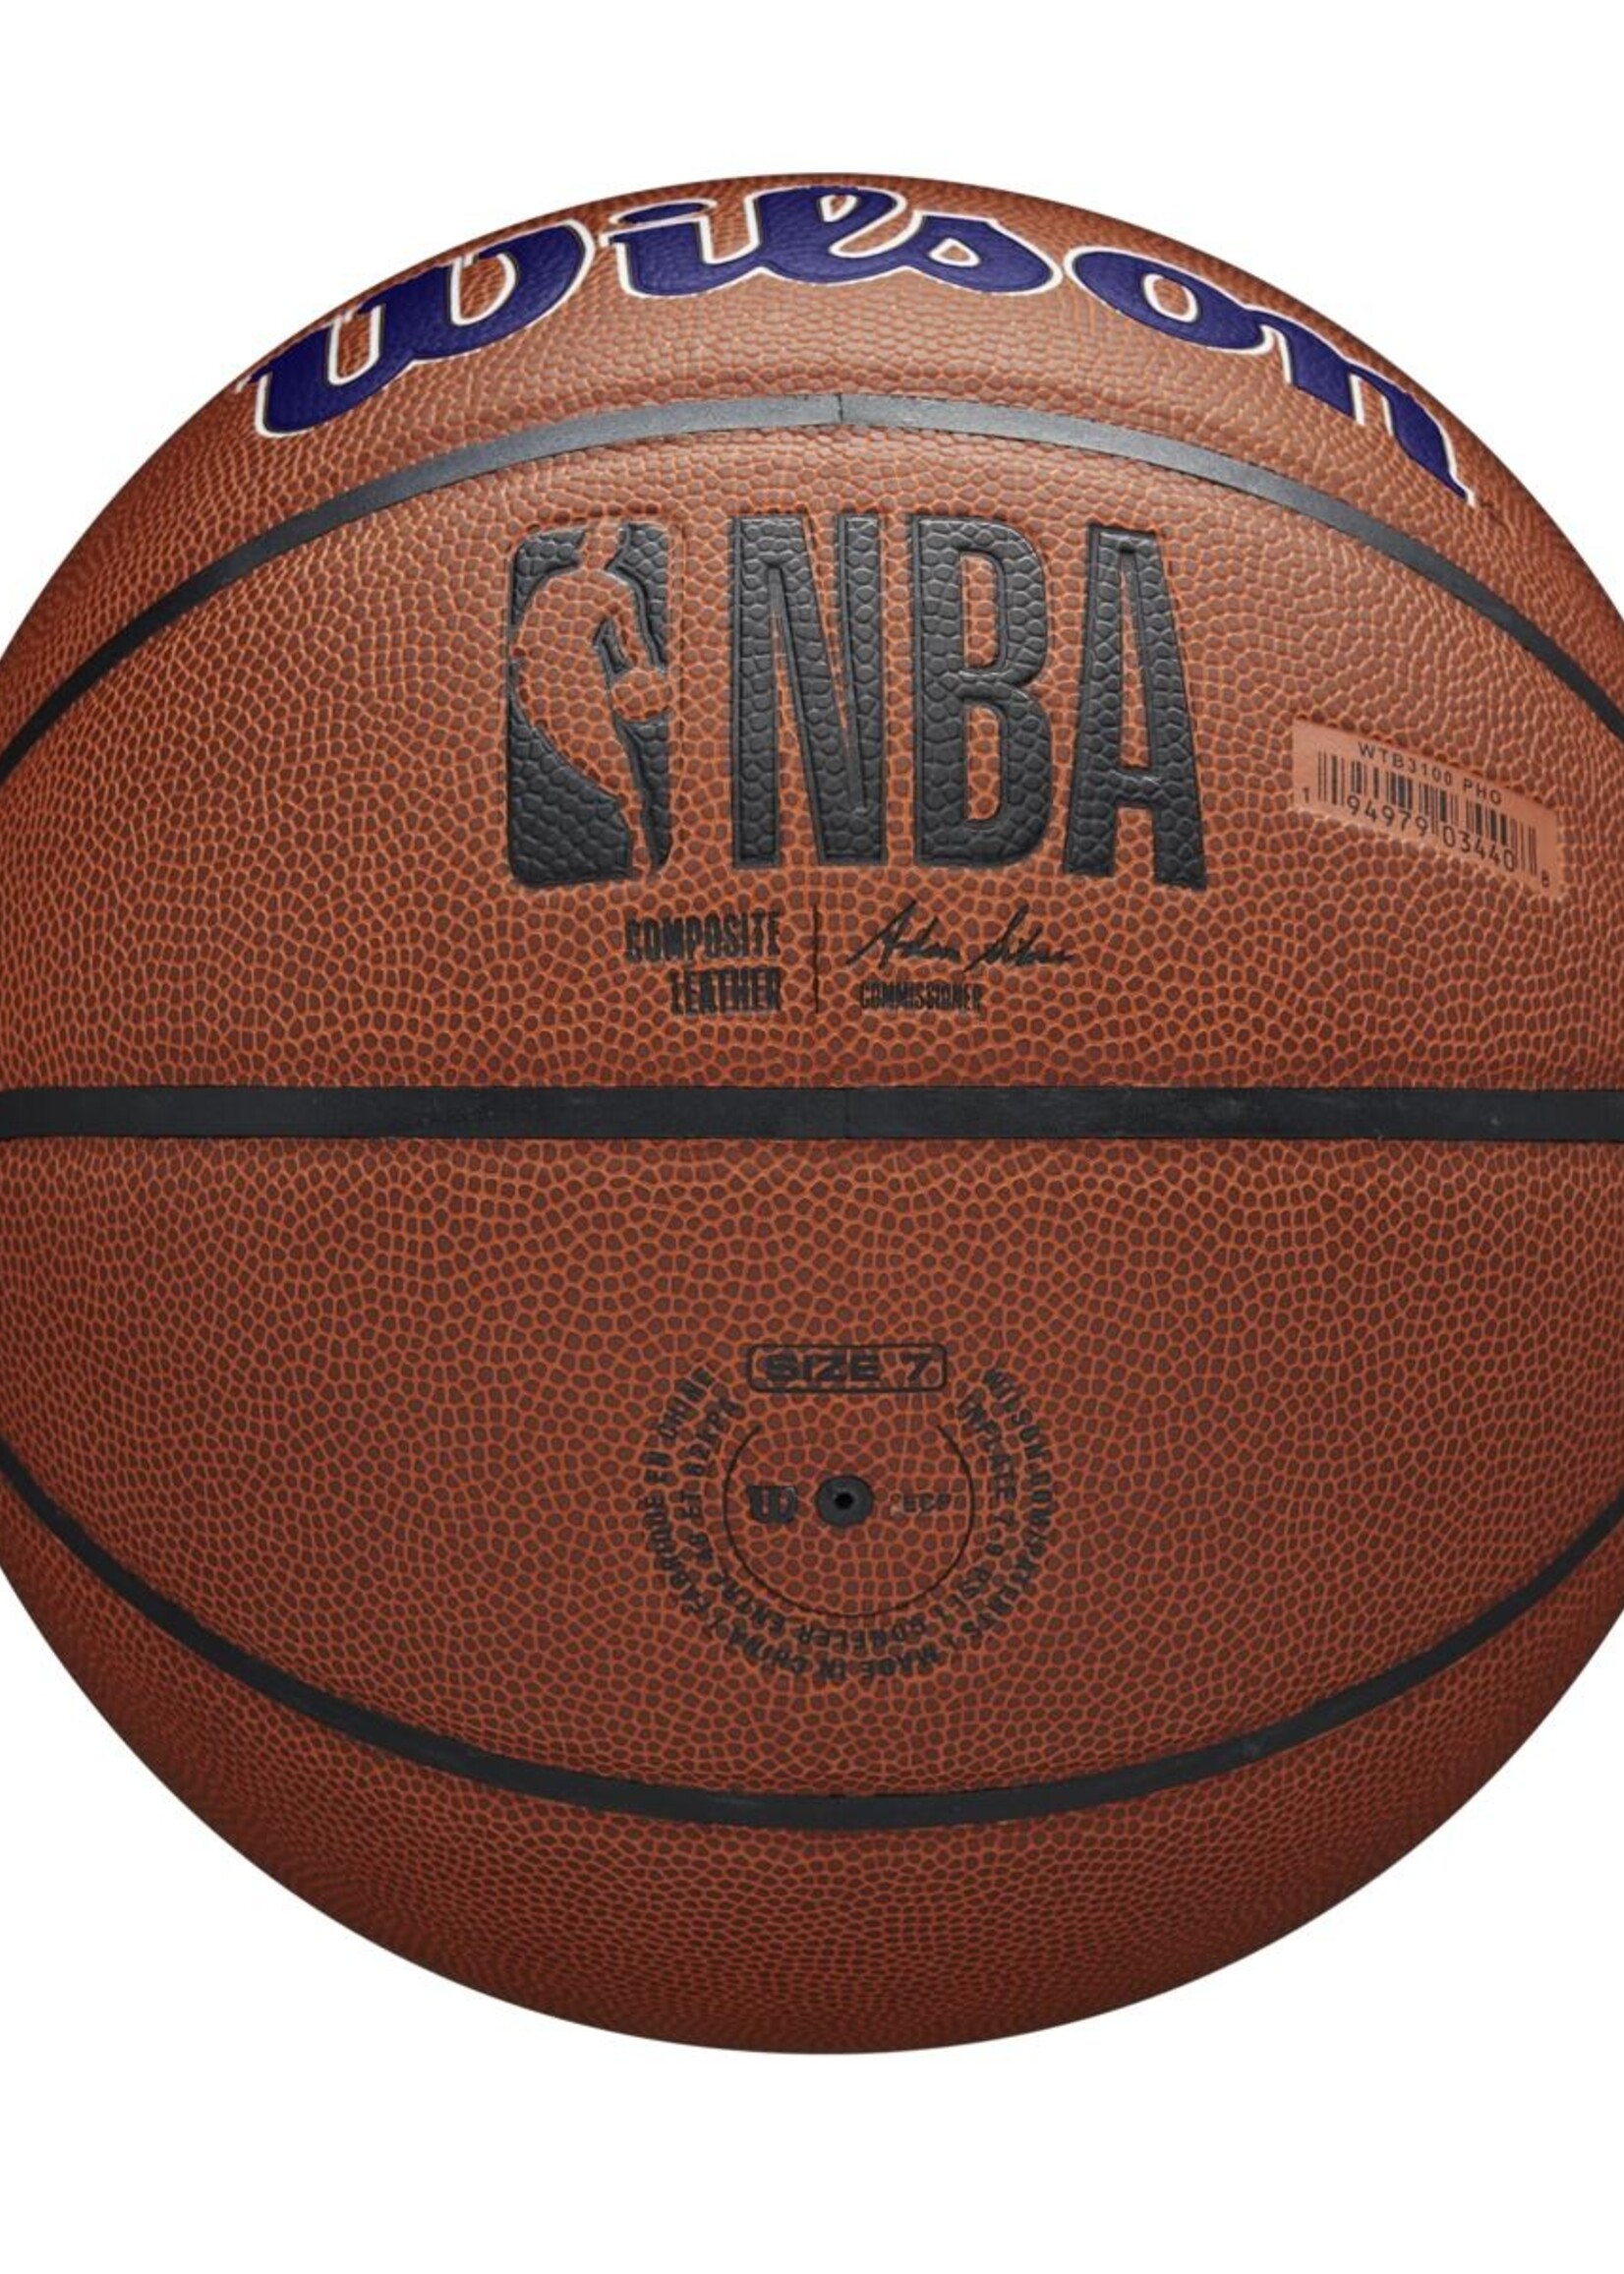 Wilson Wilson NBA PHOENIX SUNS Composite Indoor / Outdoor Basketbal (7)